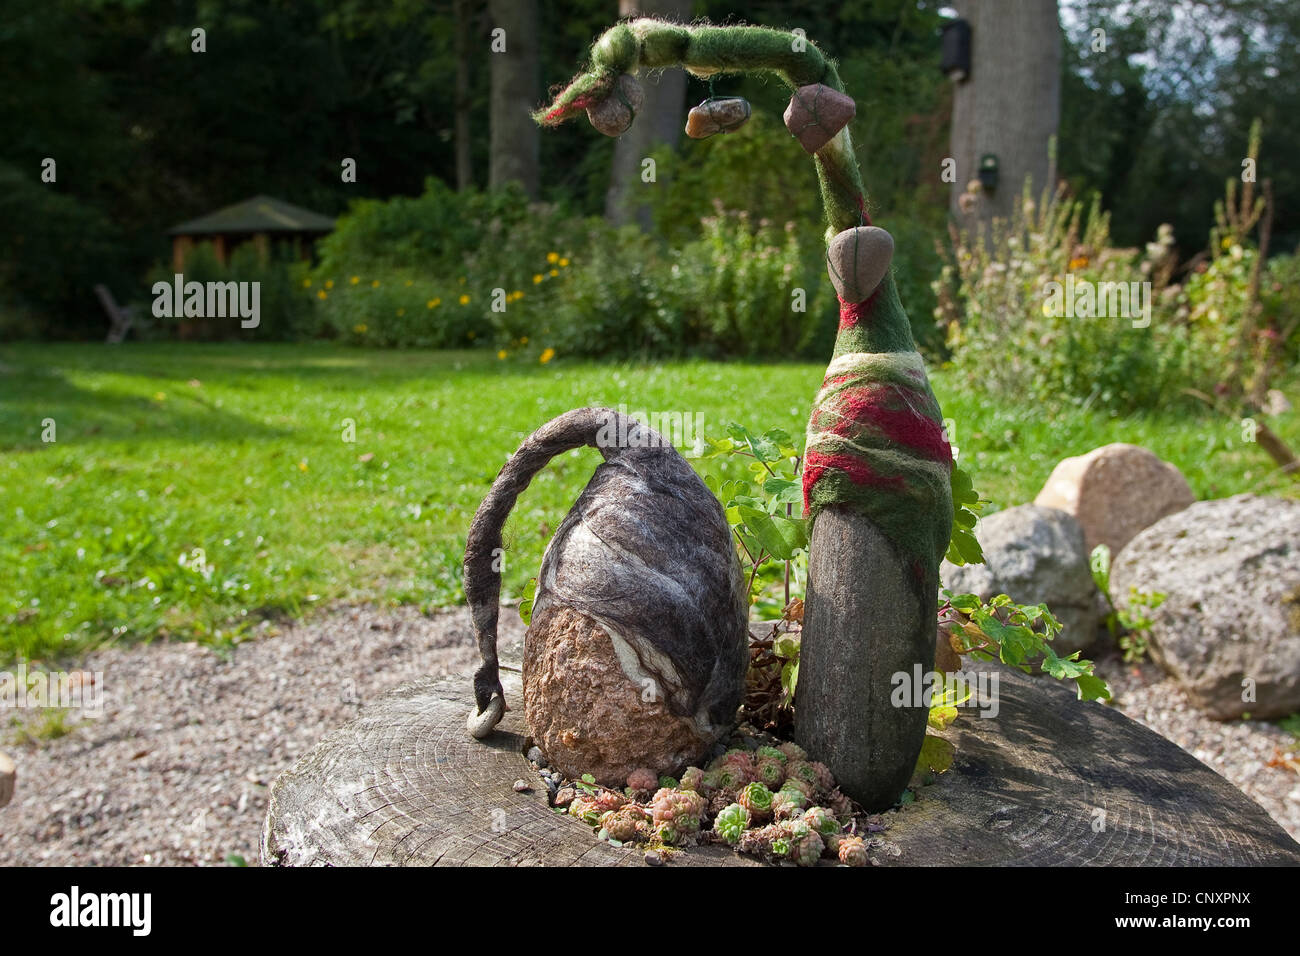 'Avis des trolls de pierre servant de décoration de jardin : deux pierres naturelles équipées de bouchons de laine feutrée côte à côte sur un arbre accroc, Allemagne Banque D'Images